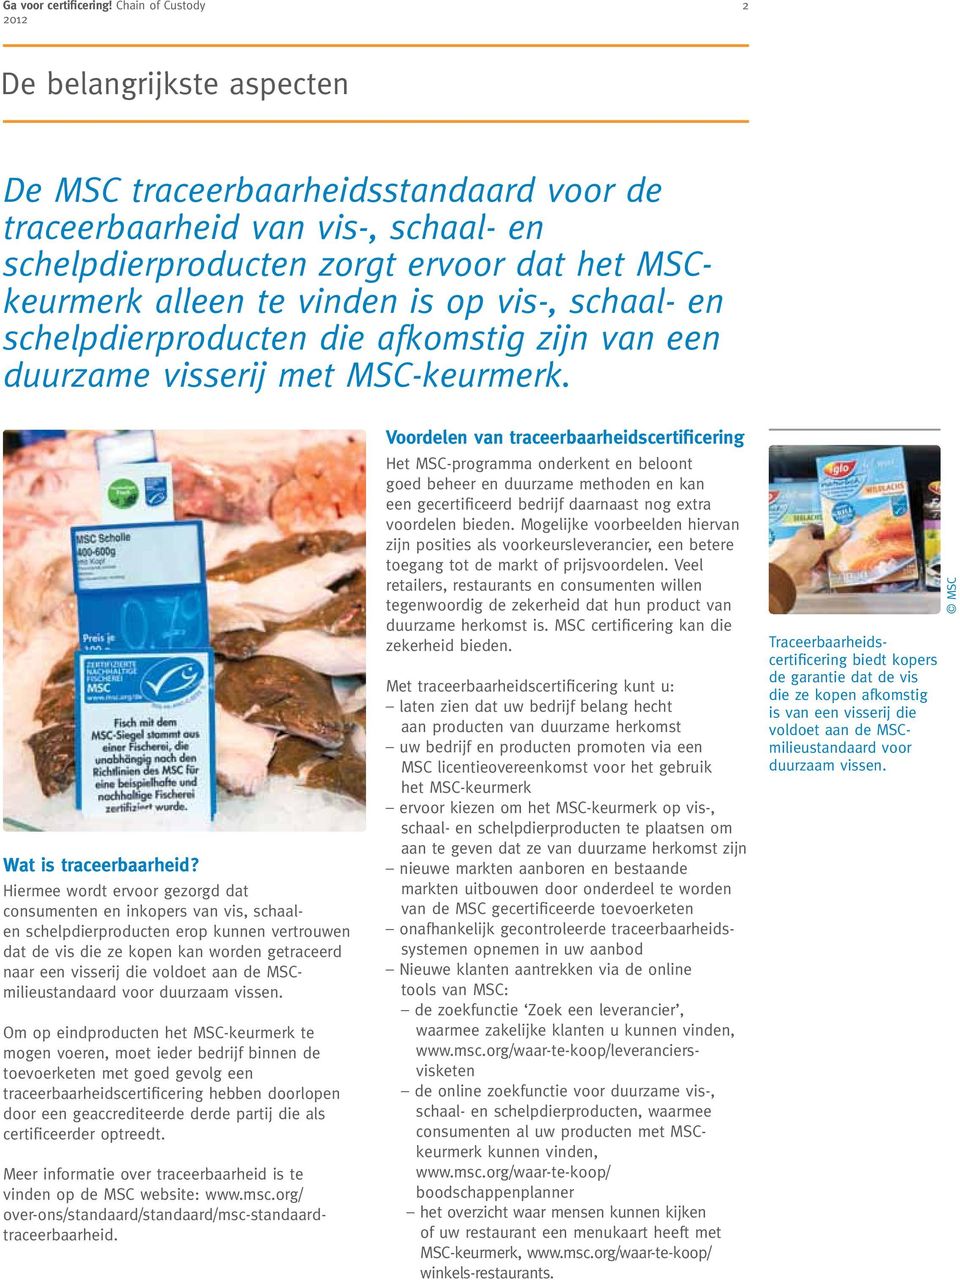 vis-, schaal- en schelpdierproducten die afkomstig zijn van een duurzame visserij met MSC-keurmerk. Wat is traceerbaarheid?